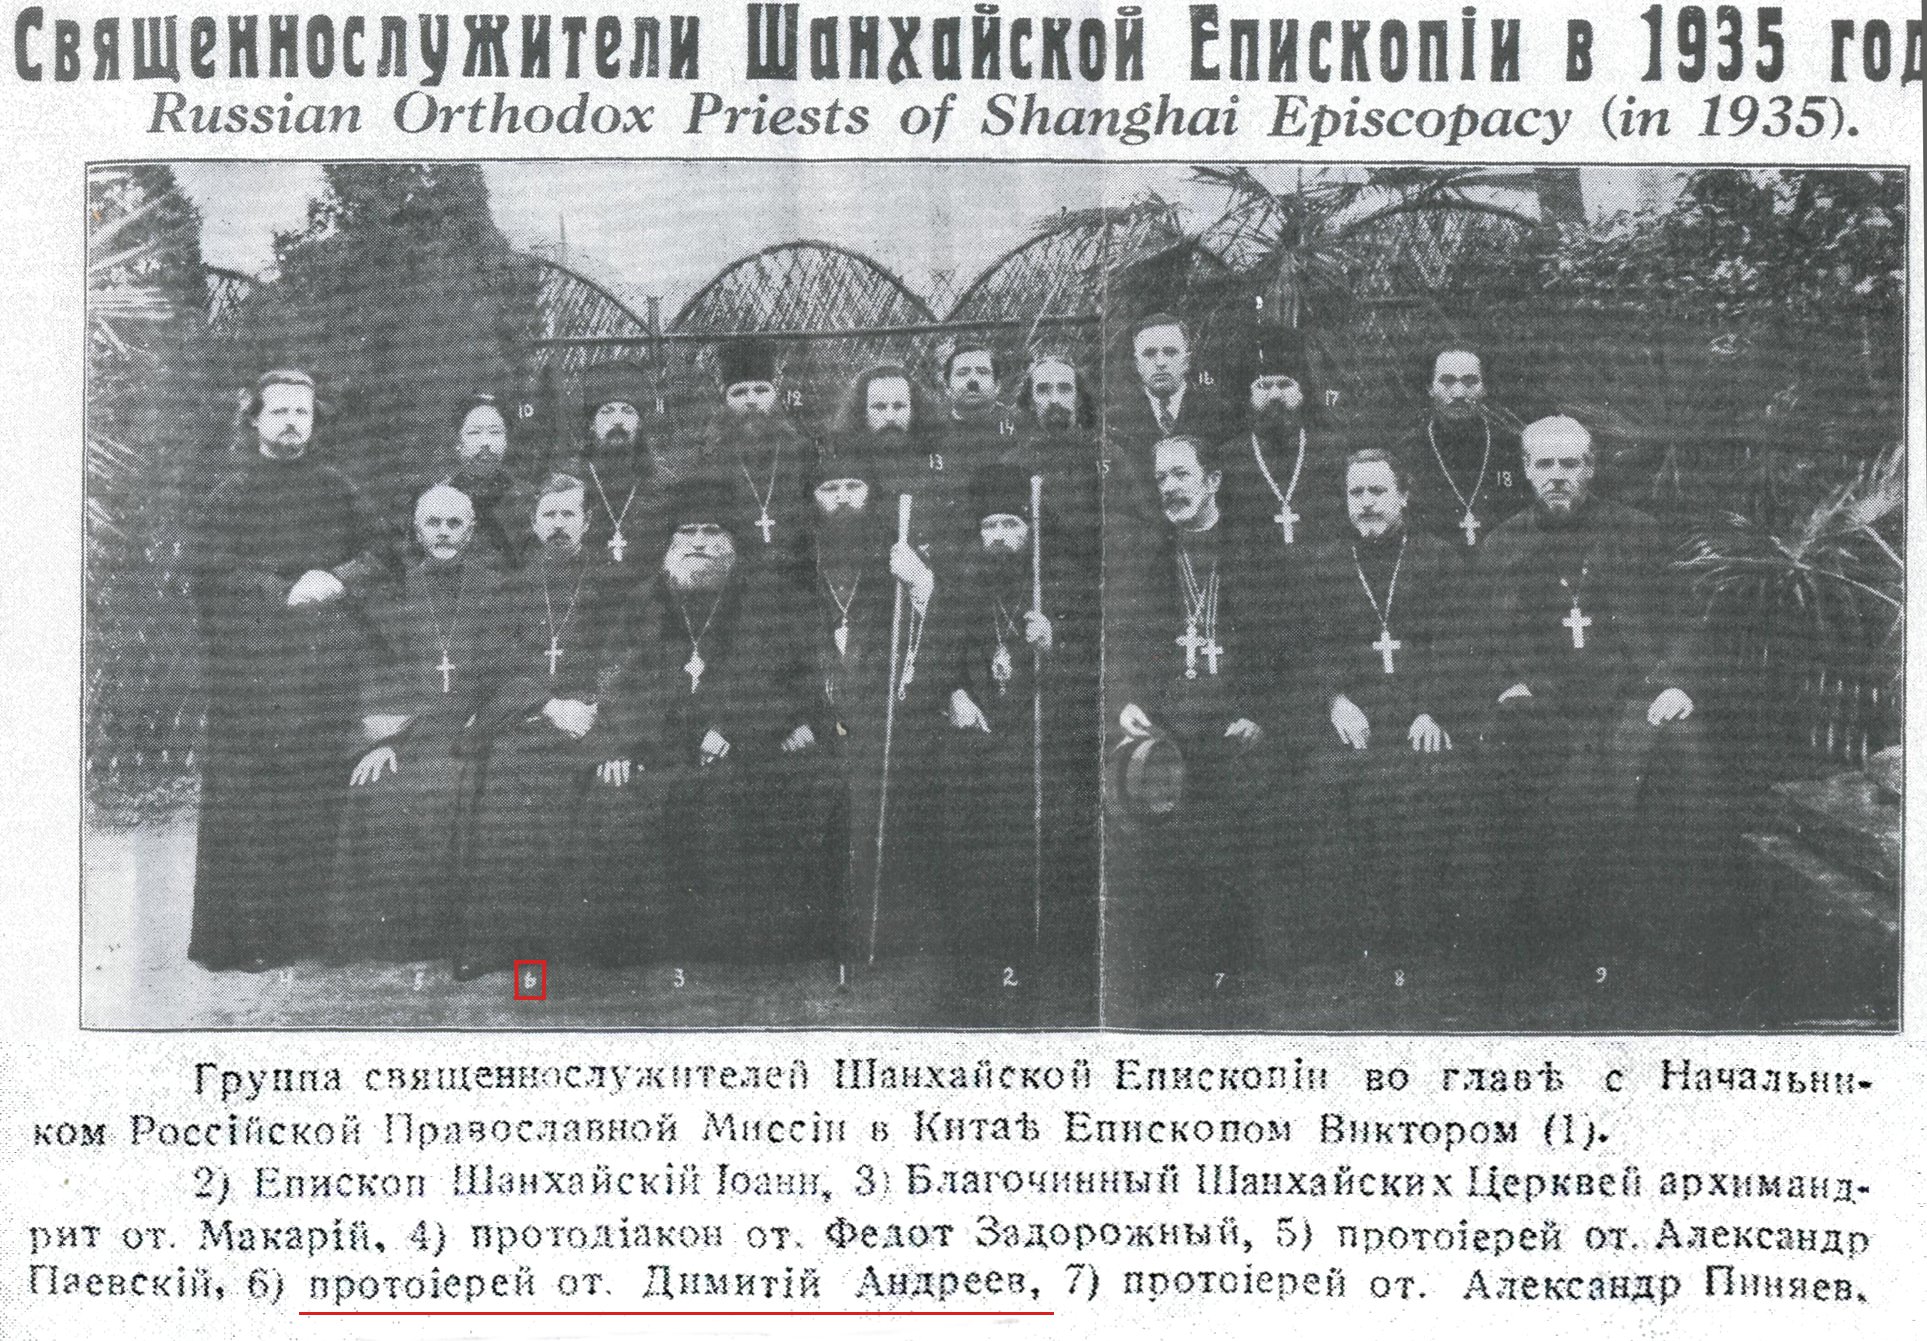 Svjaschennosluzhiteli_Shankhaiskoi_episkopii_1935_g.jpg